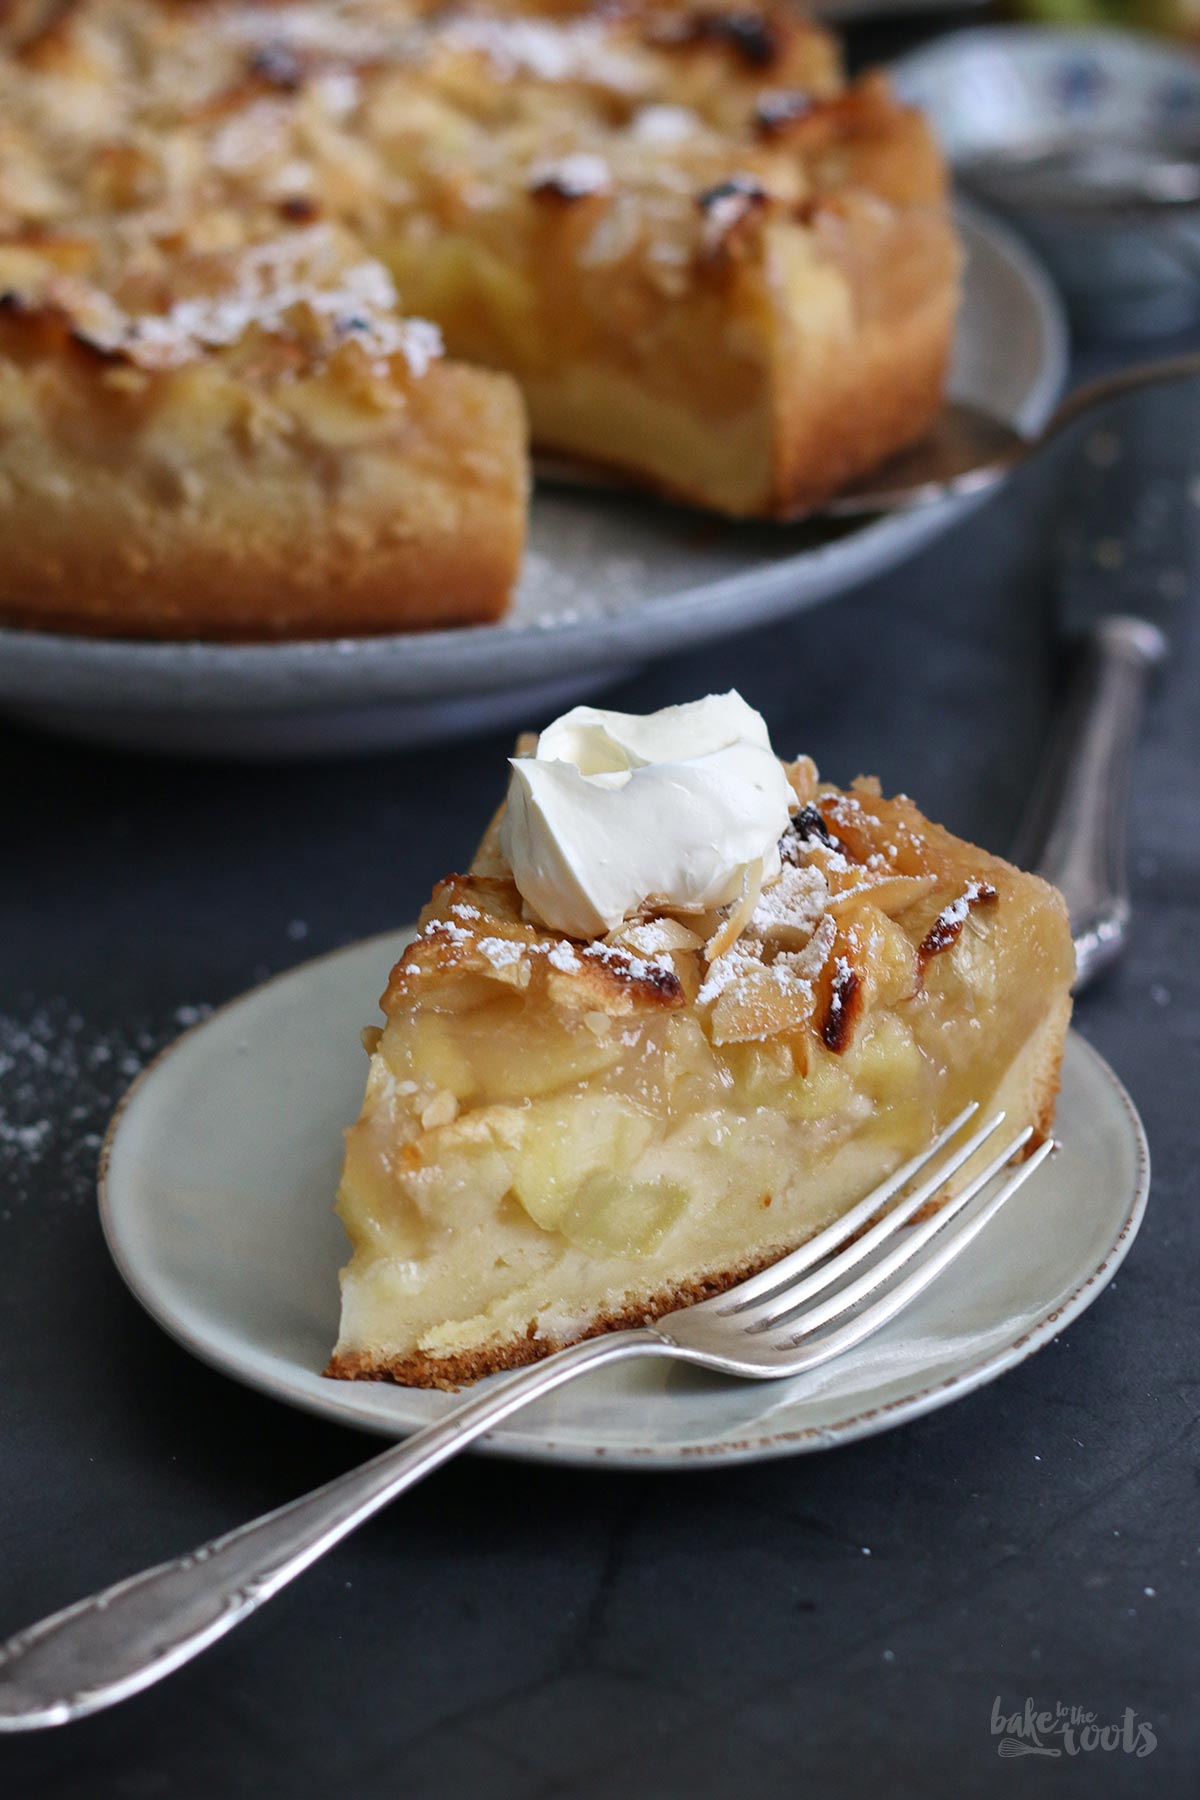 Großmutters Französischer Apfelkuchen | Bake to the roots